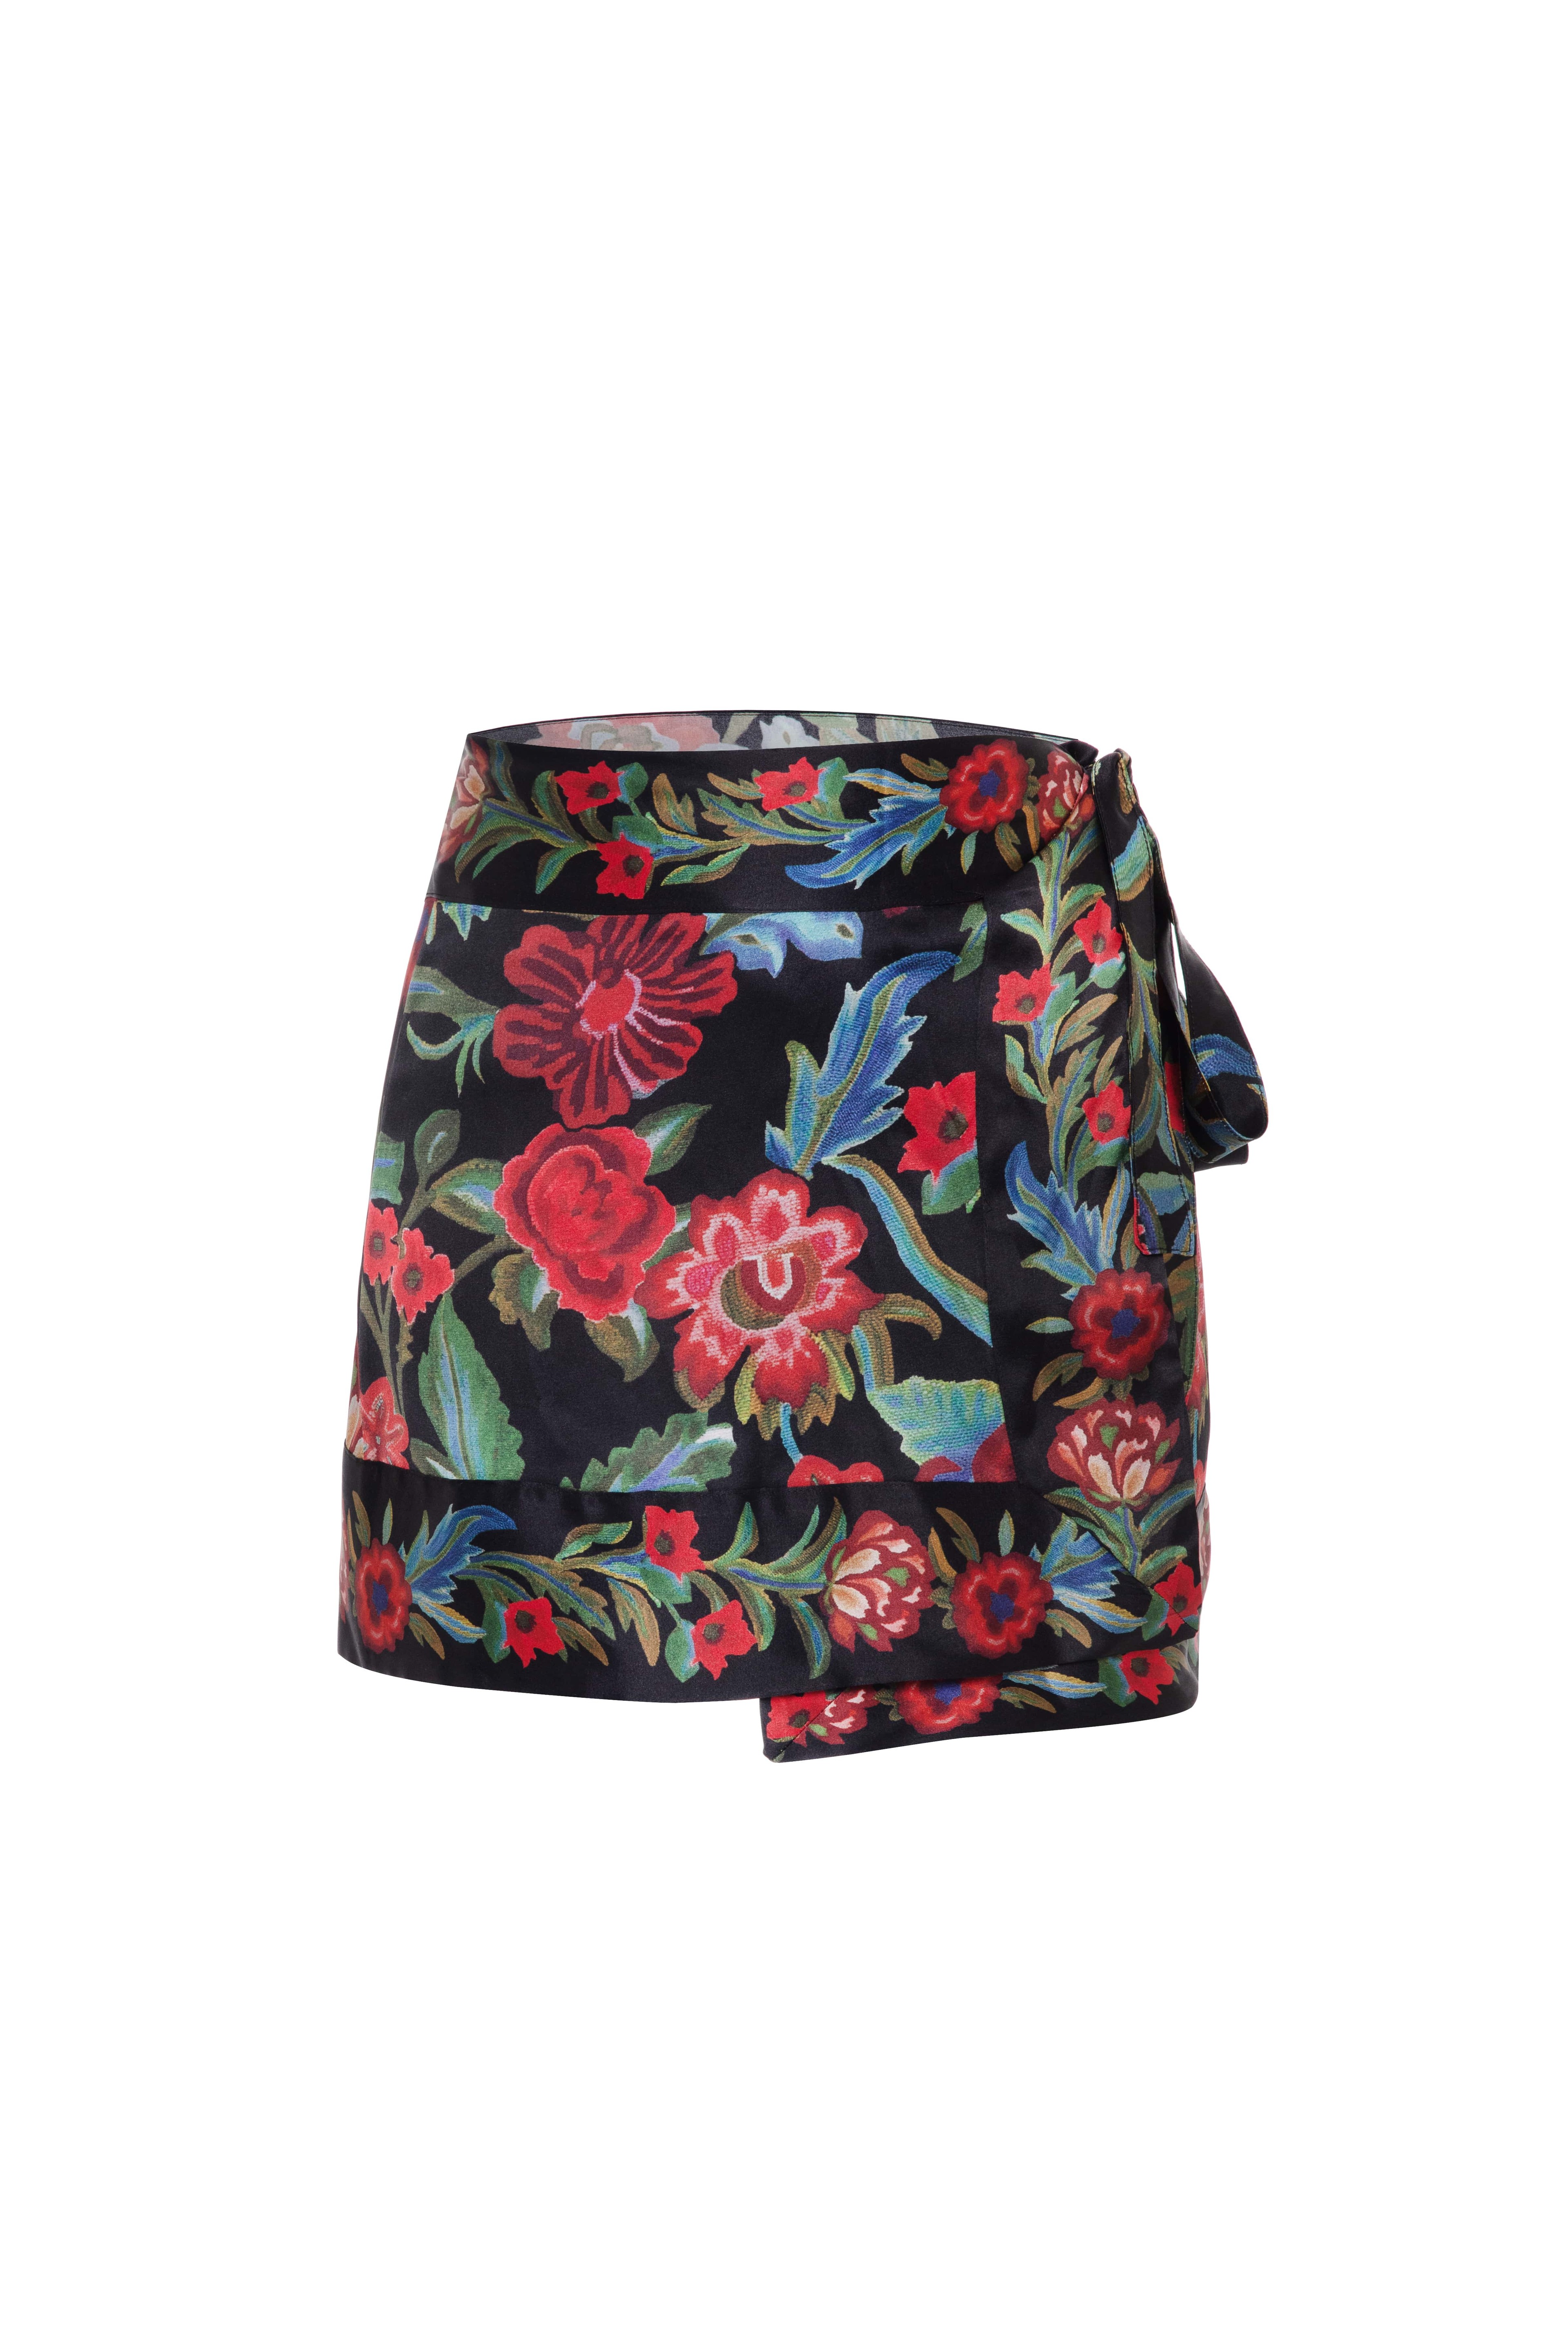 Black Roses Skirt Short